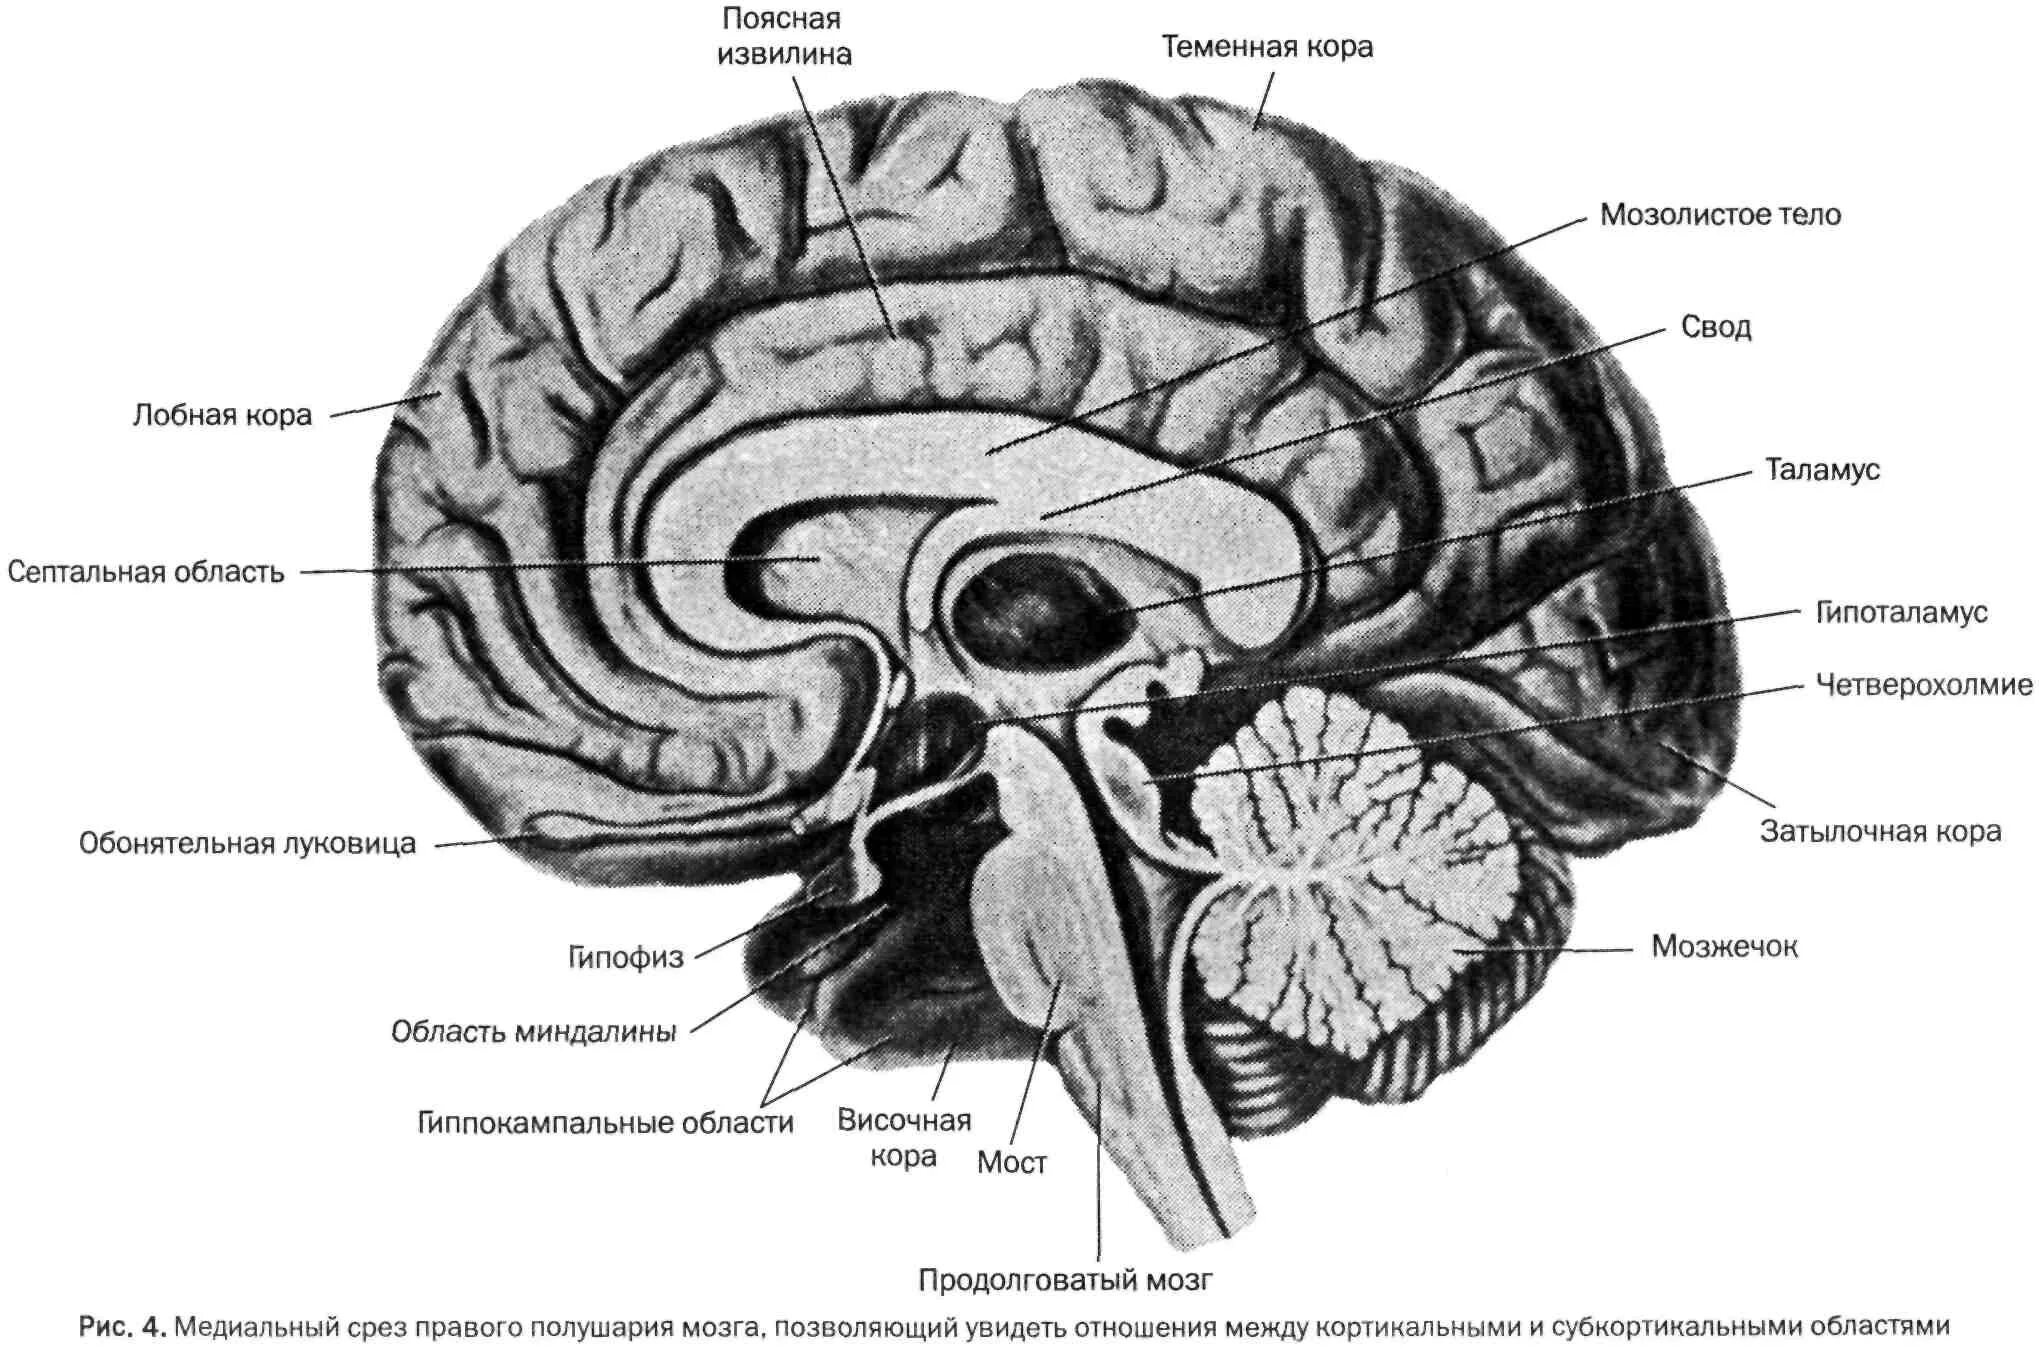 Складчатая поверхность головного мозга. Сагитальный разрез головного мозга. Сагиттальный разрез головного мозга (медиальная поверхность). Отделы головного мозга на сагиттальном срезе.